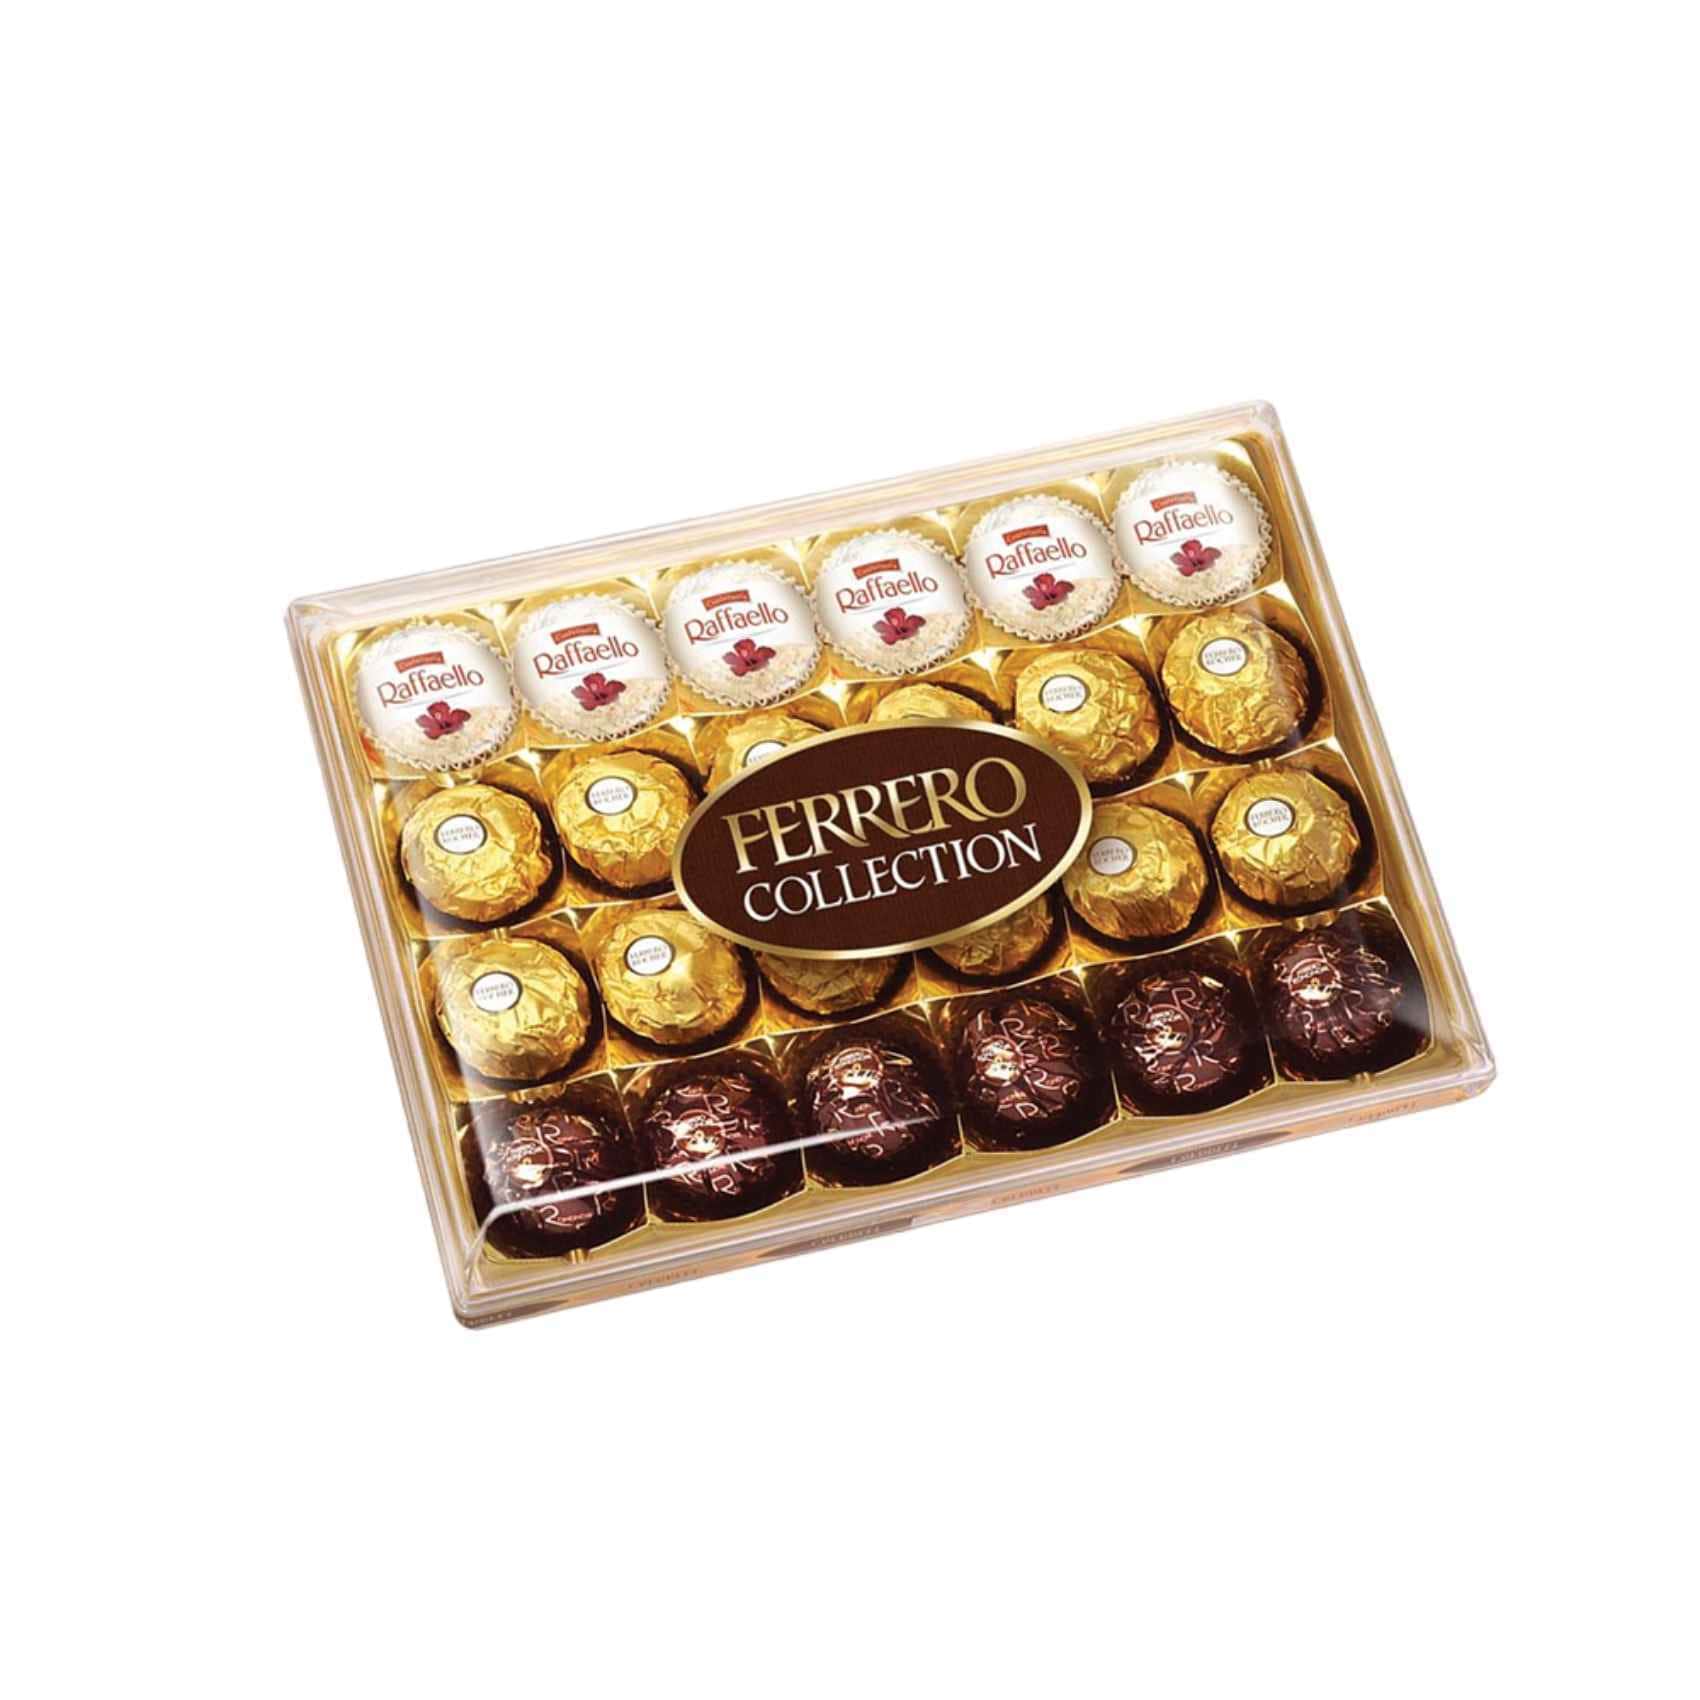 Ferrero Collection Gift Box, 32 Count, Rondnoir, Rocher and Raffaello